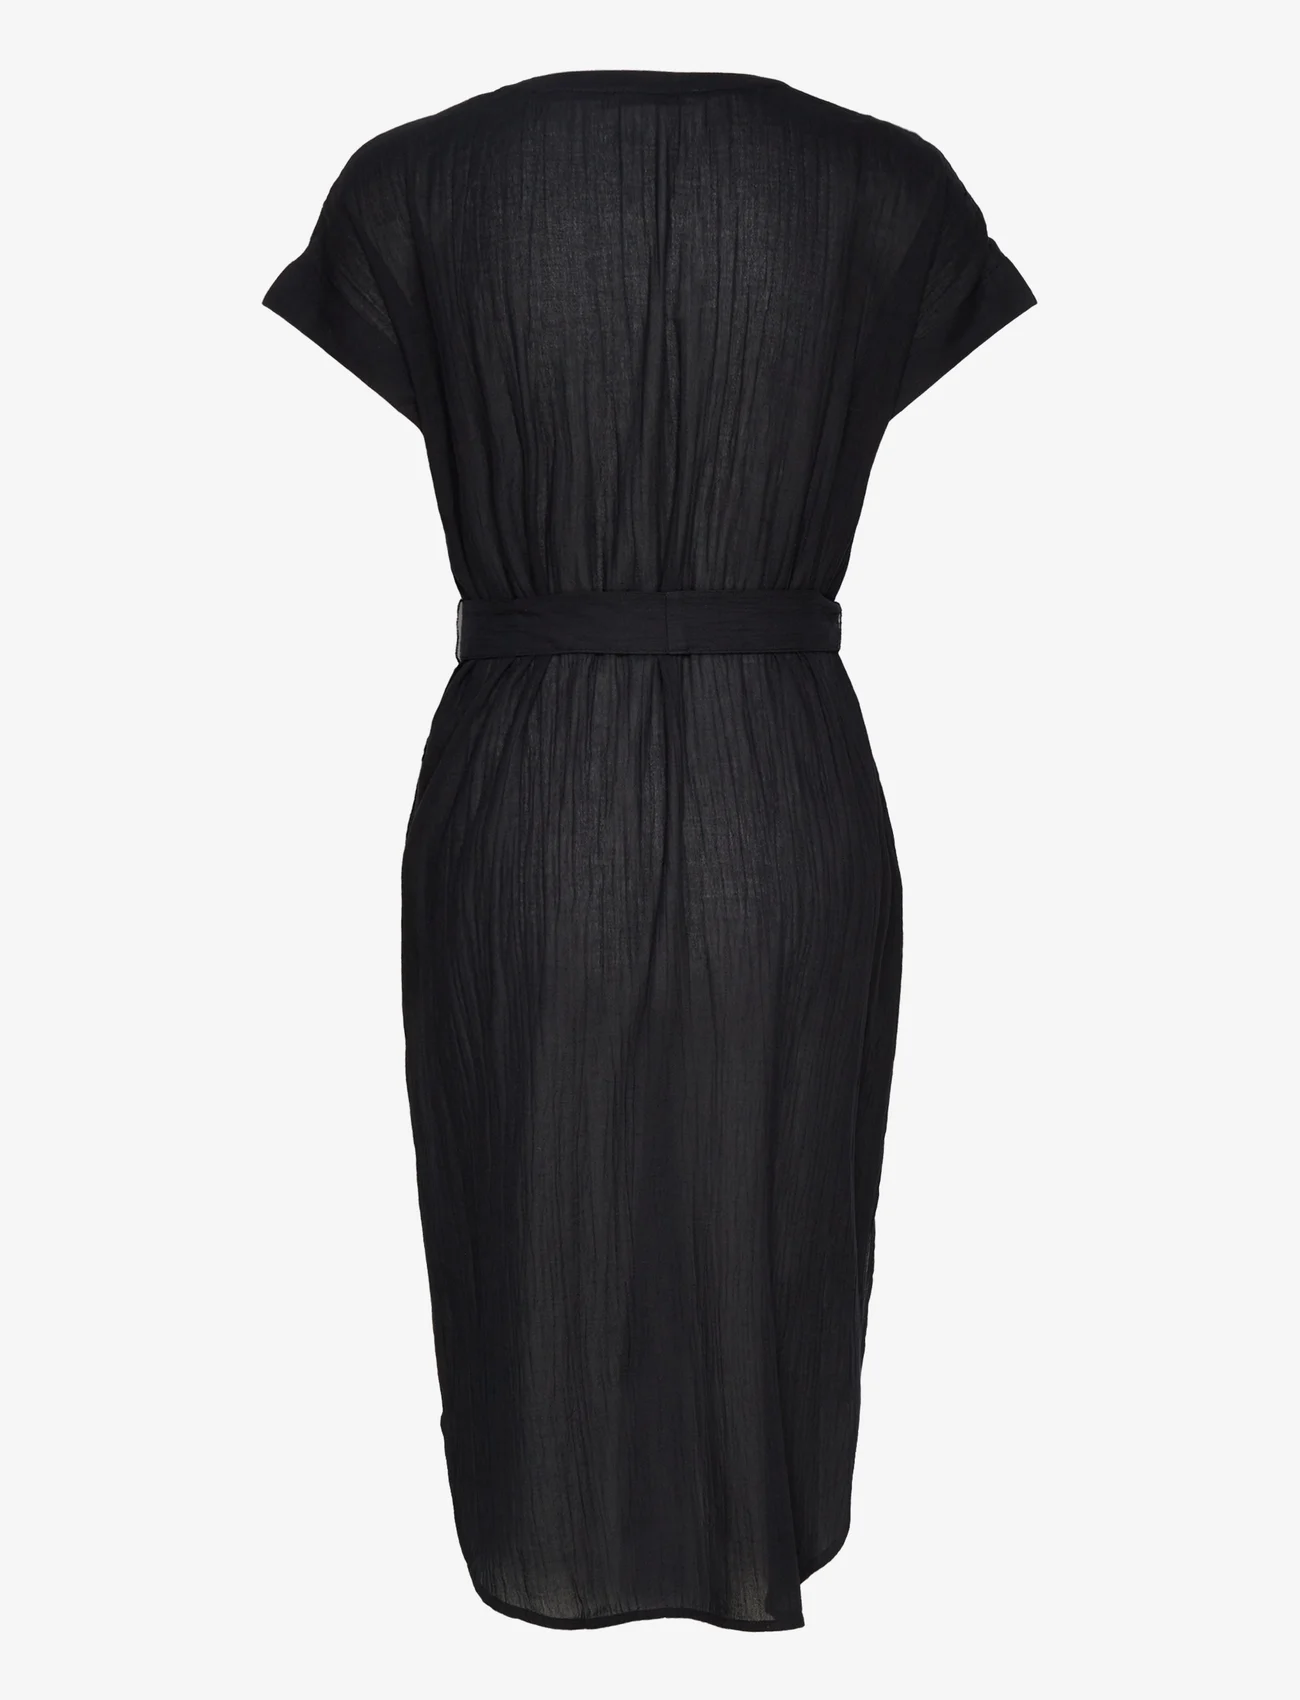 Esprit Casual - Crinkled midi dress with belt - overhemdjurken - black 4 - 1